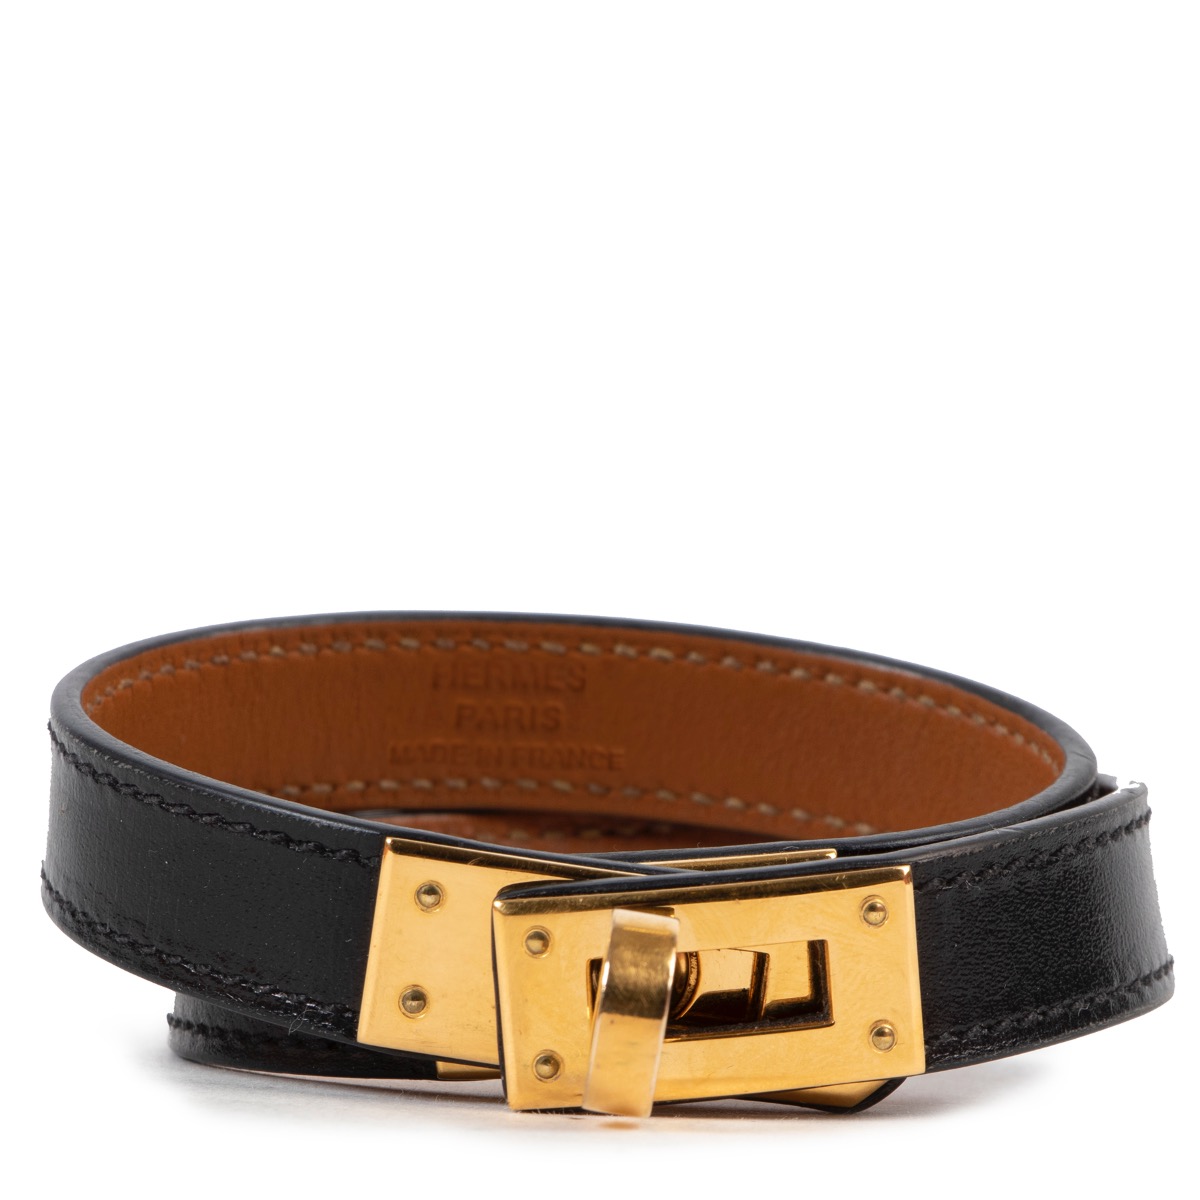 At Auction: Hermes Black Box Calf Leather Kelly Double Tour Bracelet